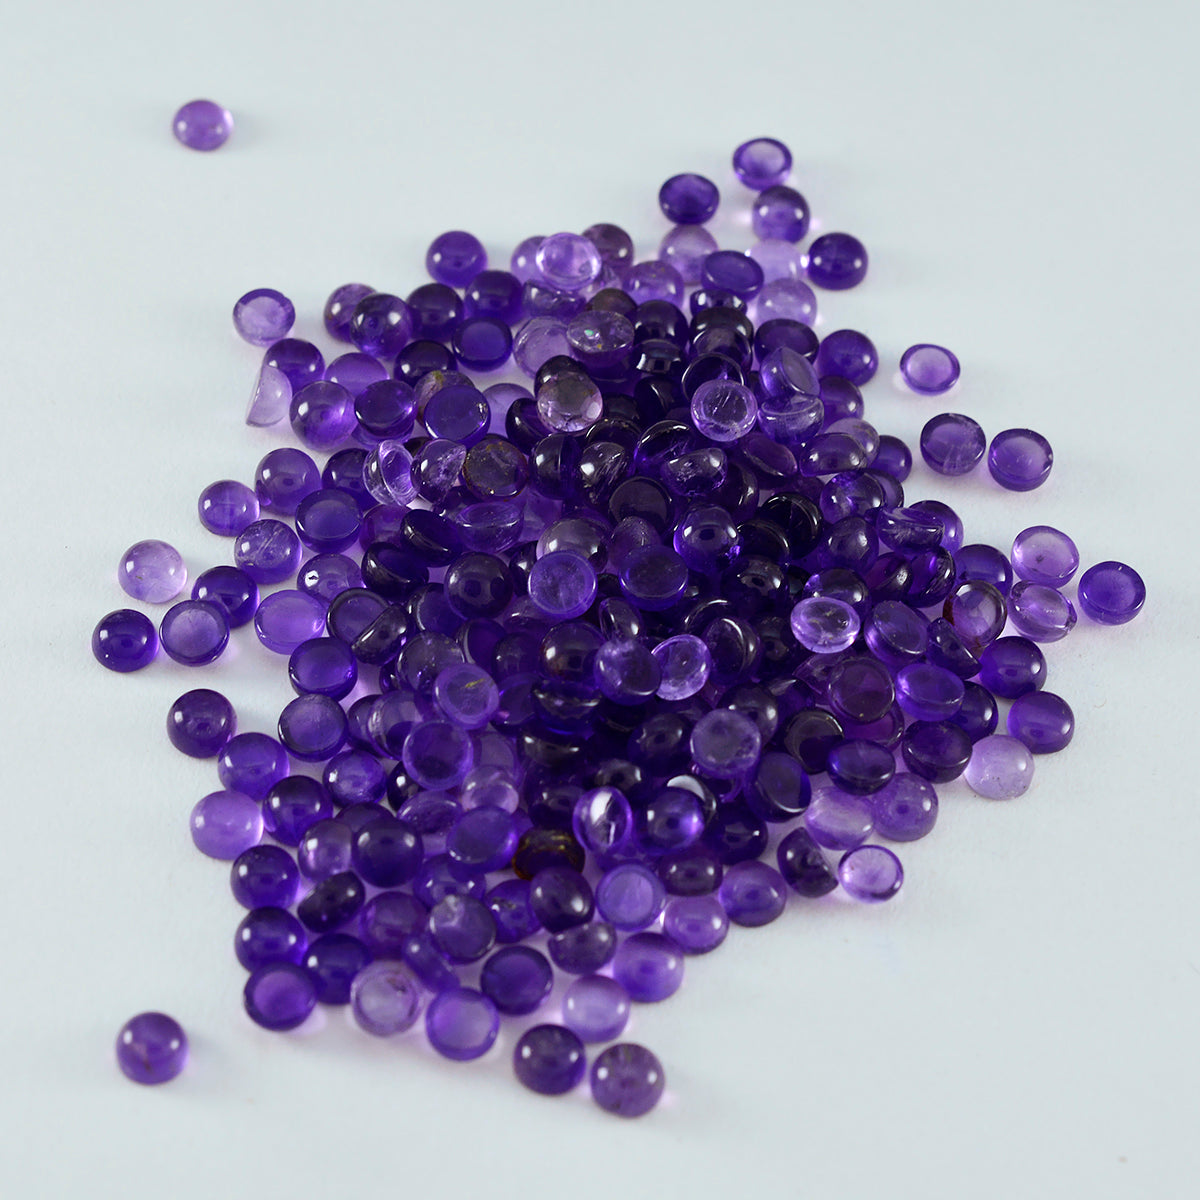 riyogems 1pc cabochon d'améthyste violette 3x3 mm forme ronde pierre précieuse de qualité douce